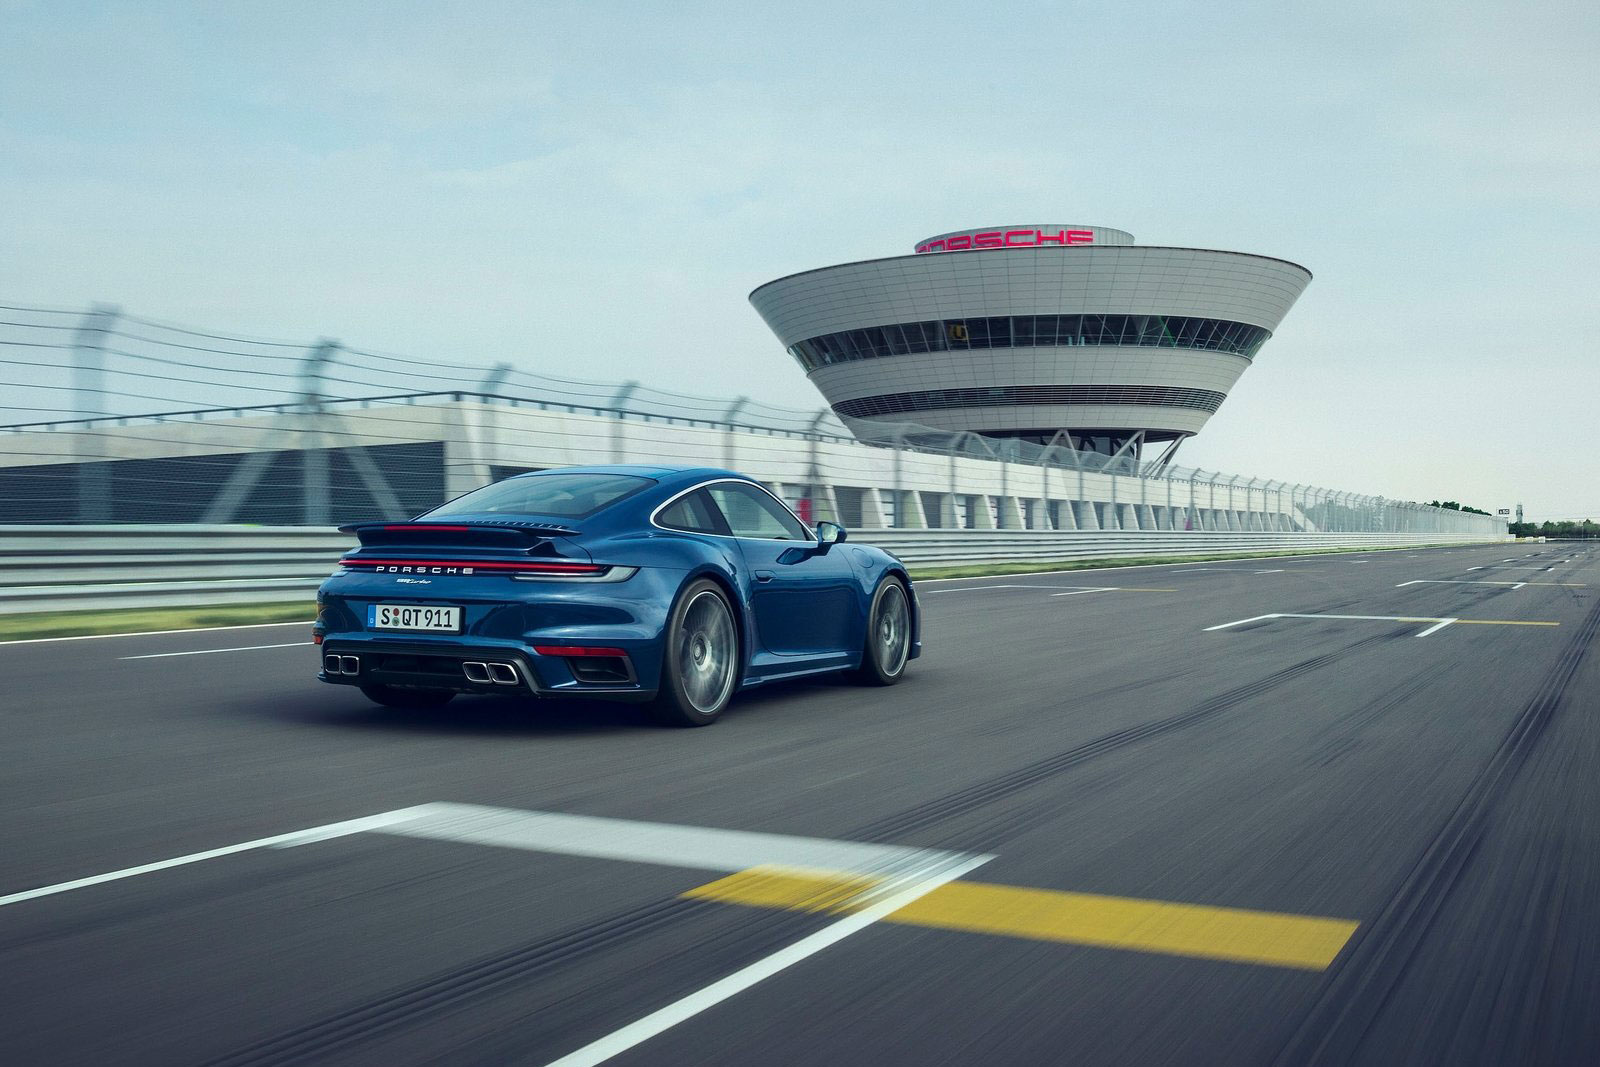 Der neue Porsche 911 Turbo: Einer für alles